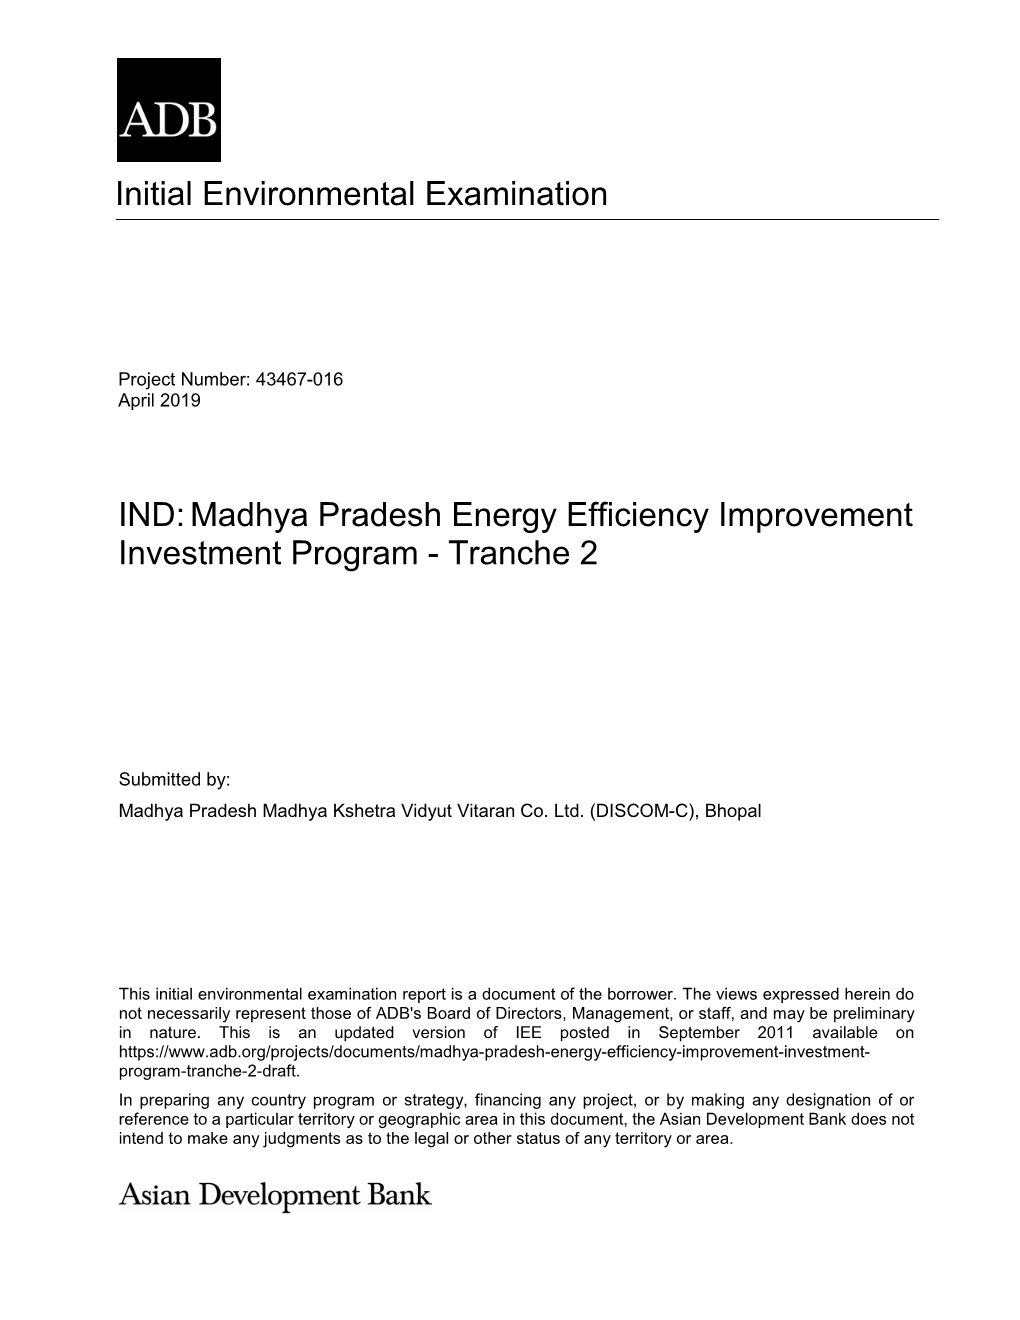 Madhya Pradesh Energy Efficiency Improvement Investment Program - Tranche 2